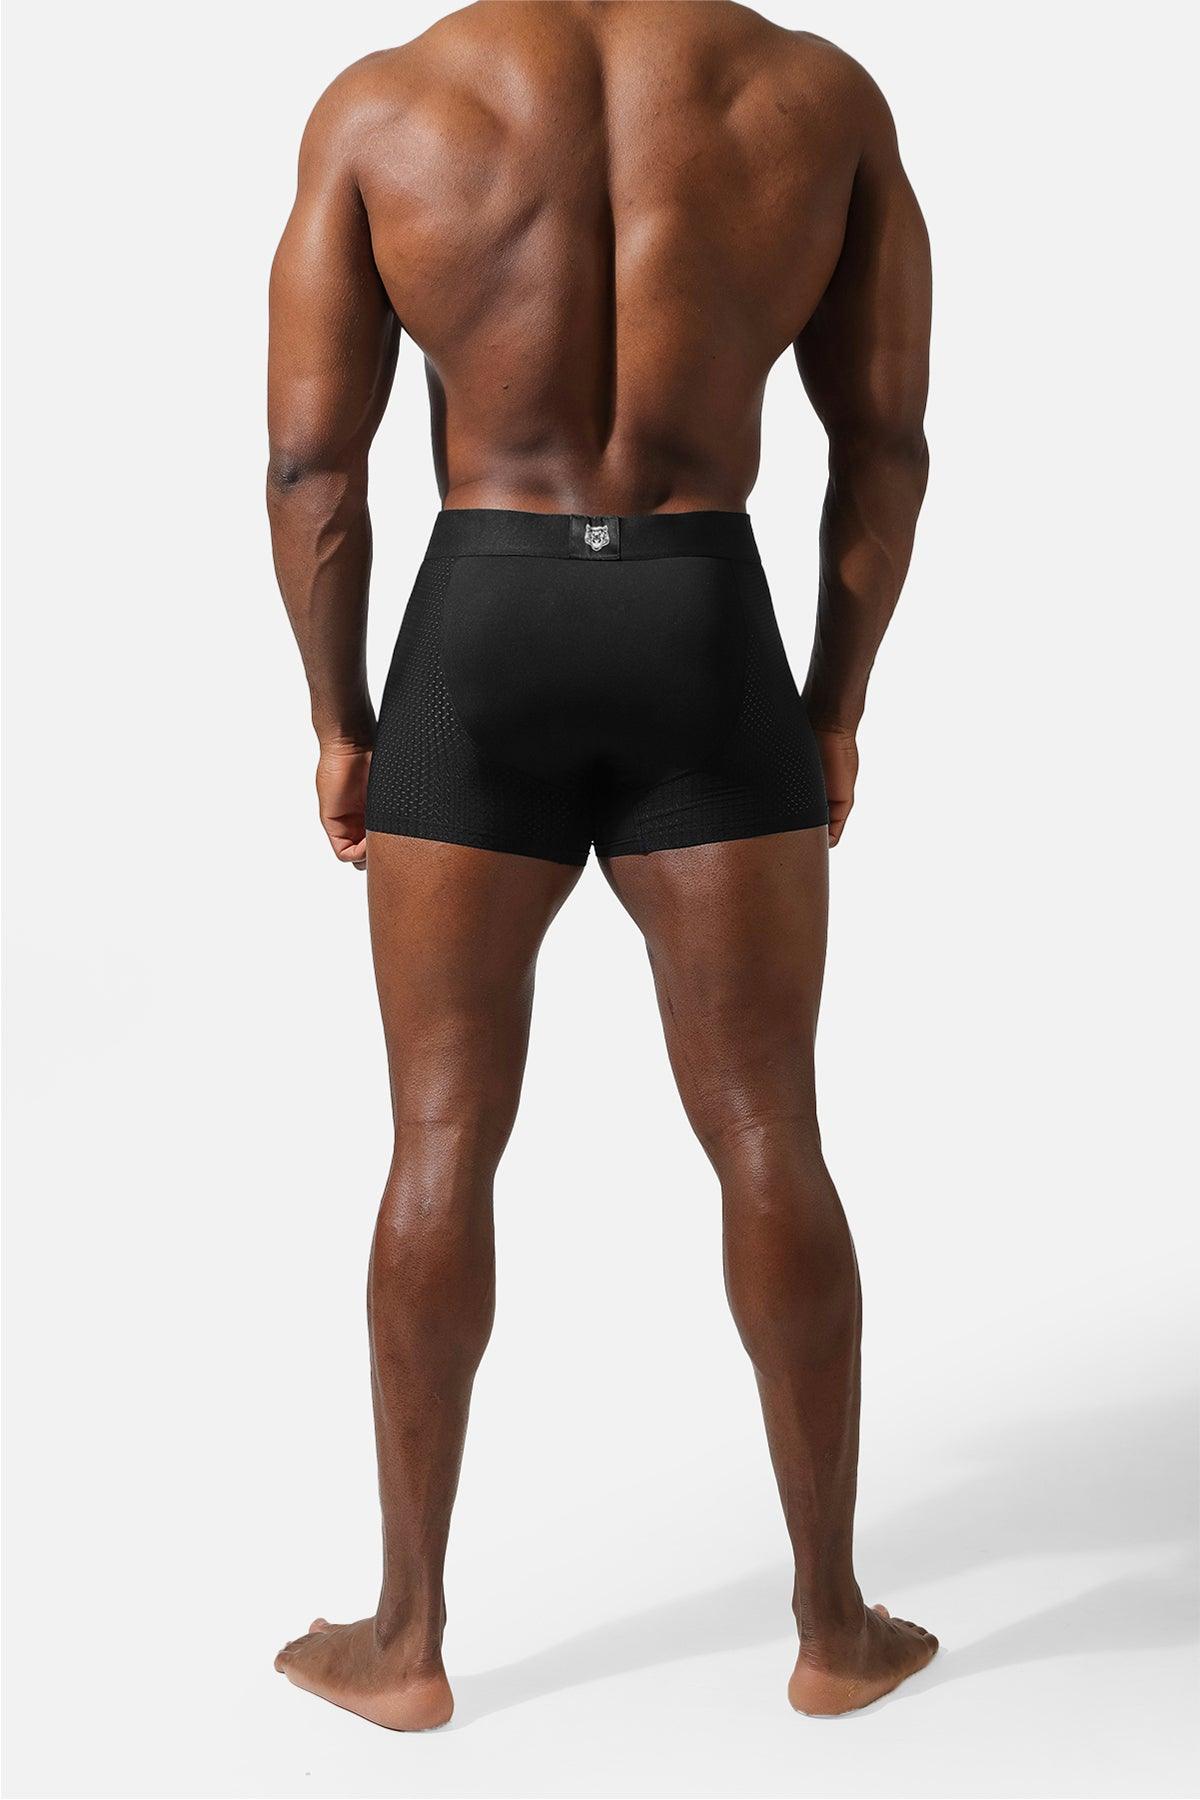 Men's Workout Mesh Briefs 2 Pack - Black & Dark Gray